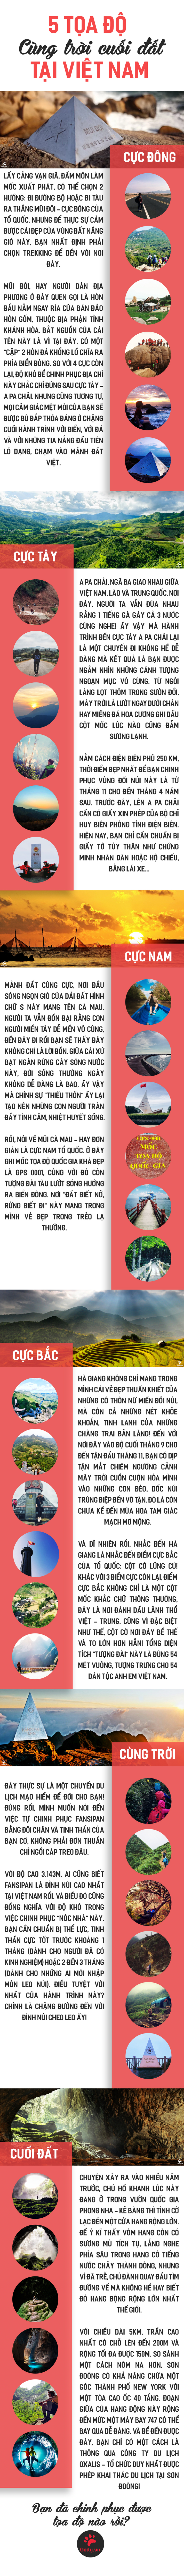 Infographic 4 điểm cực tại Việt Nam - GODY.VN